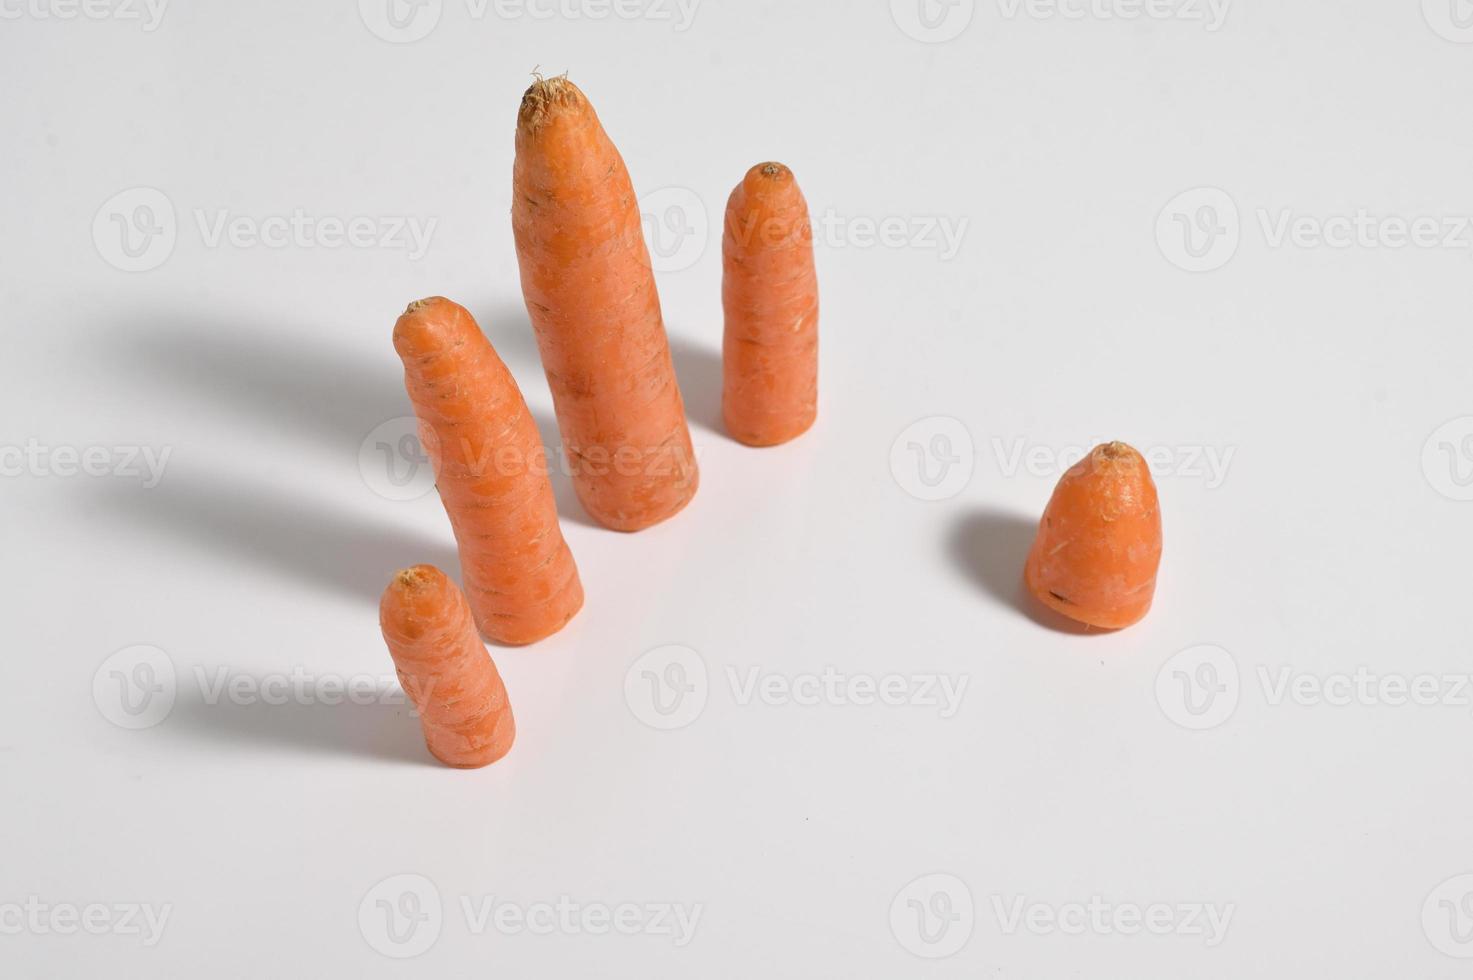 Dedos de corte assustadores de cenoura doce foto